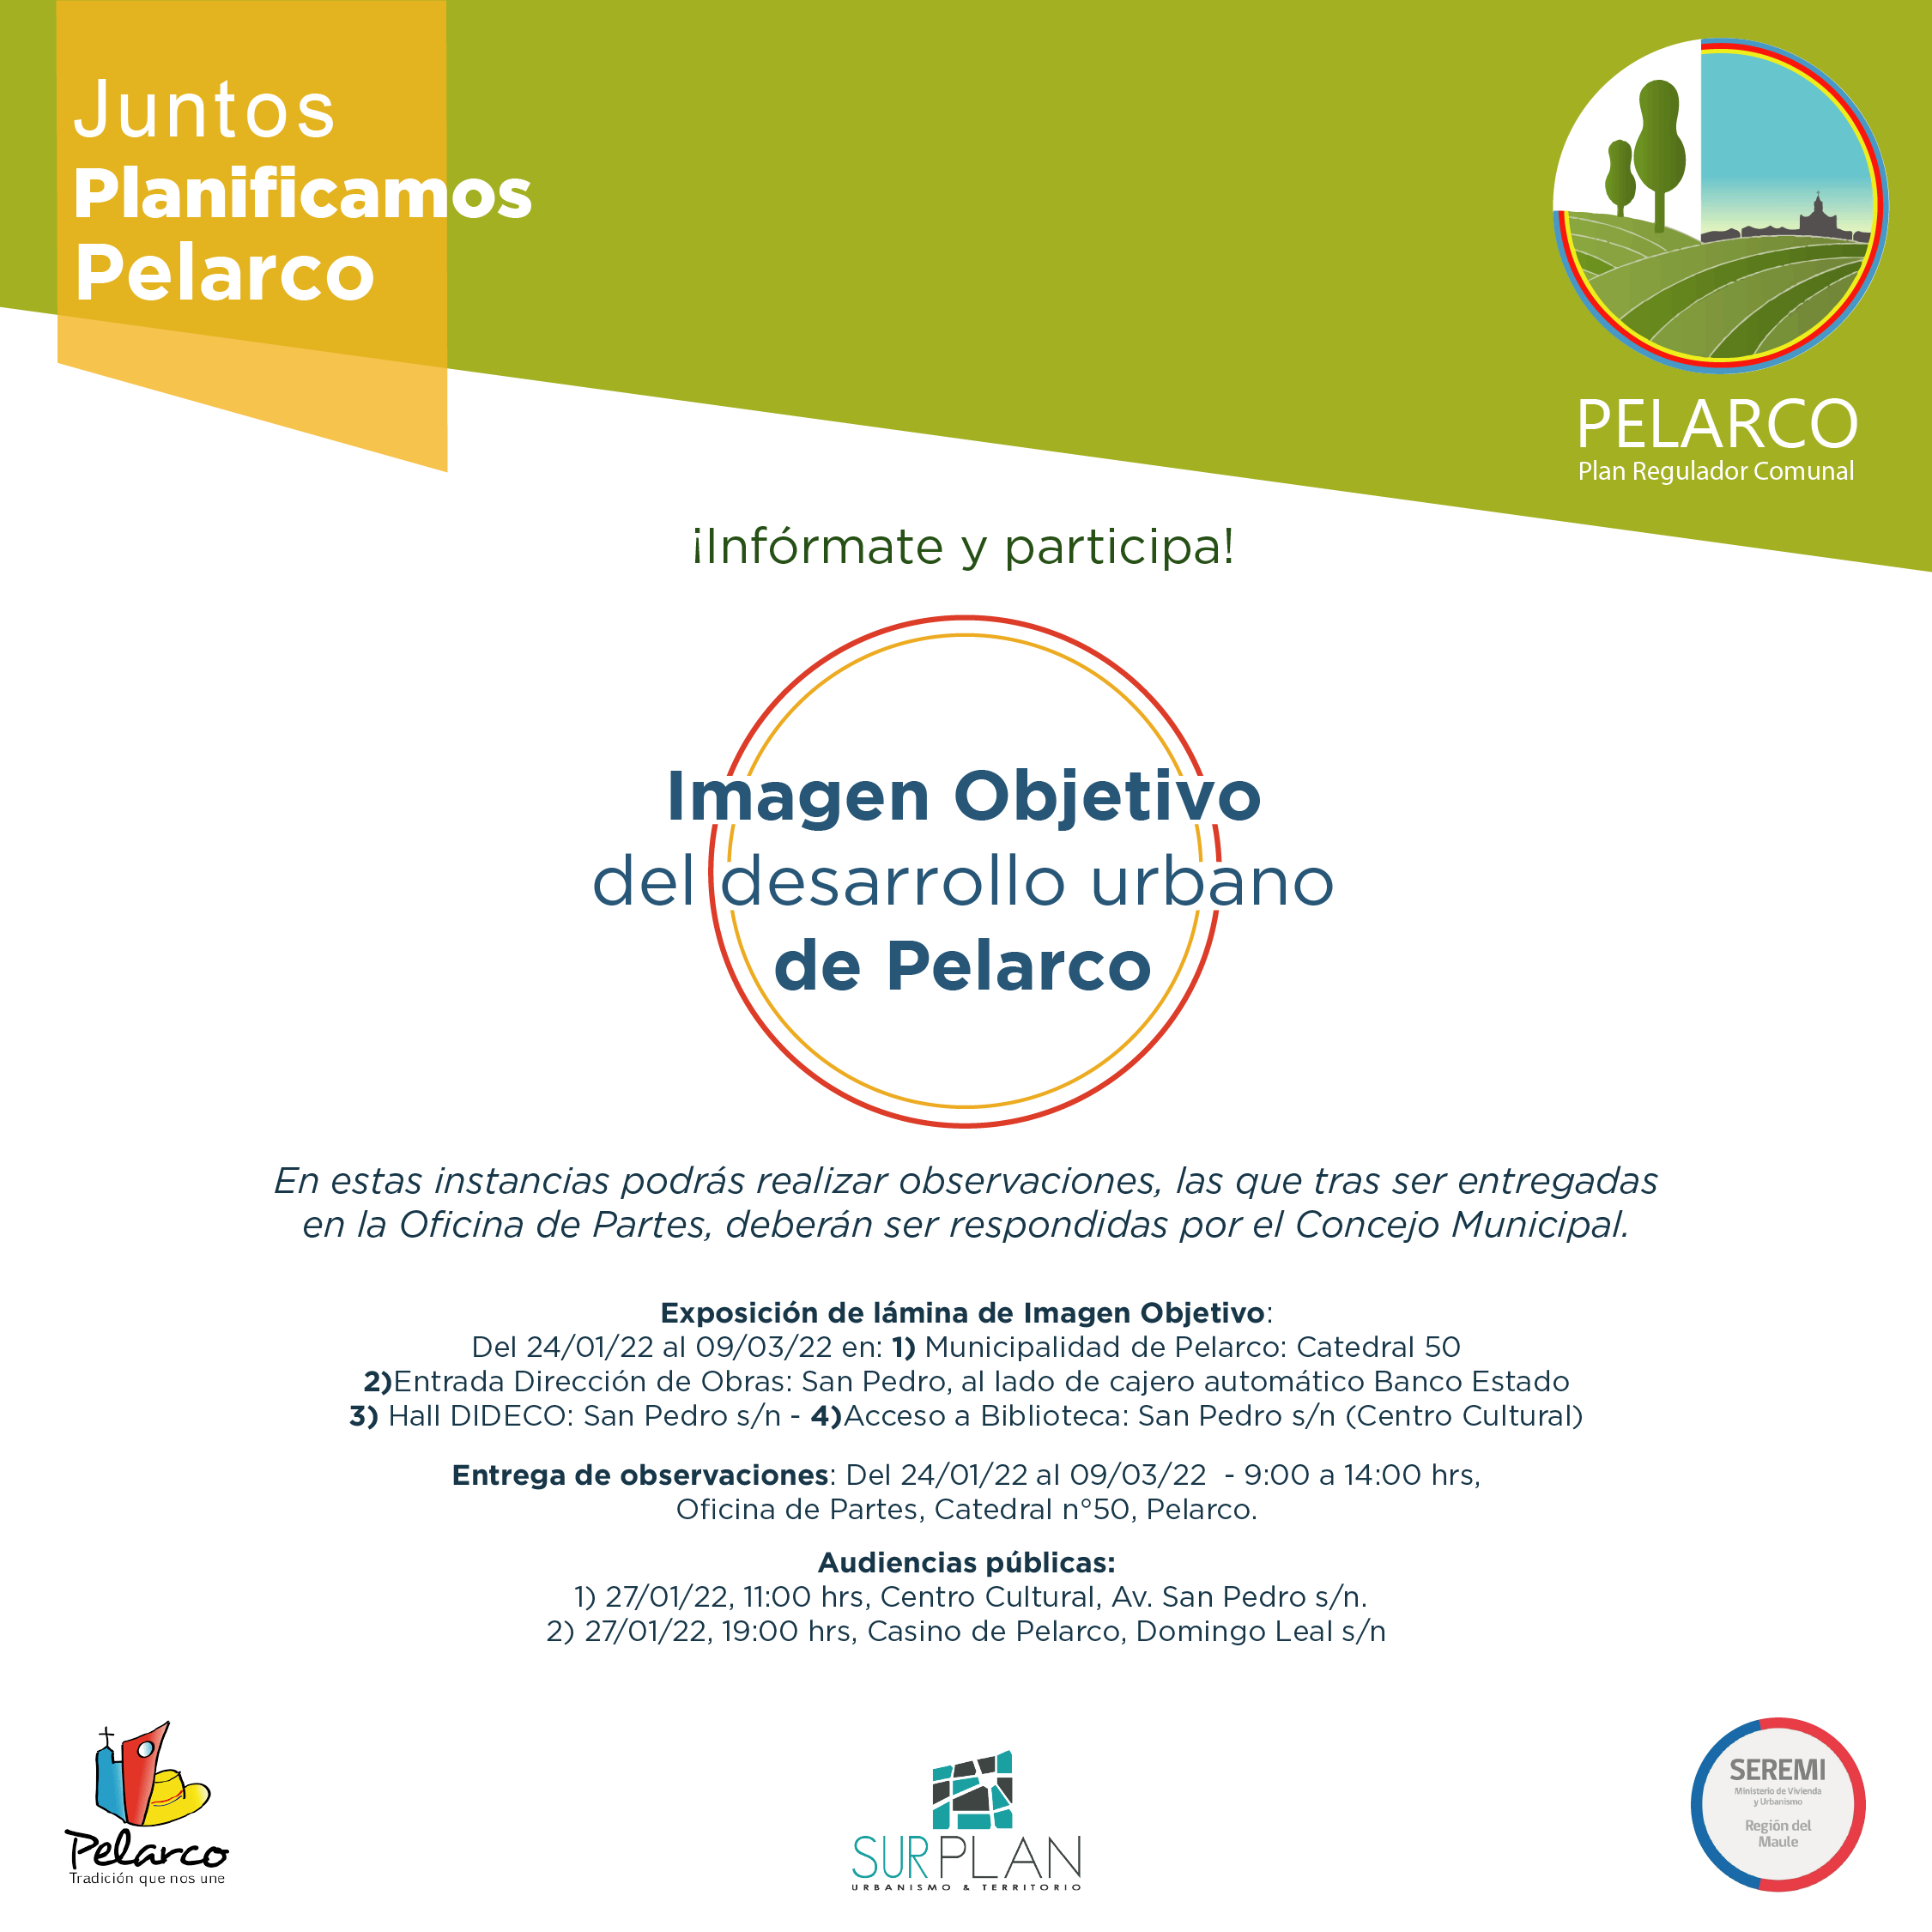 Imagen objetivo del desarrollo urbano de Pelarco